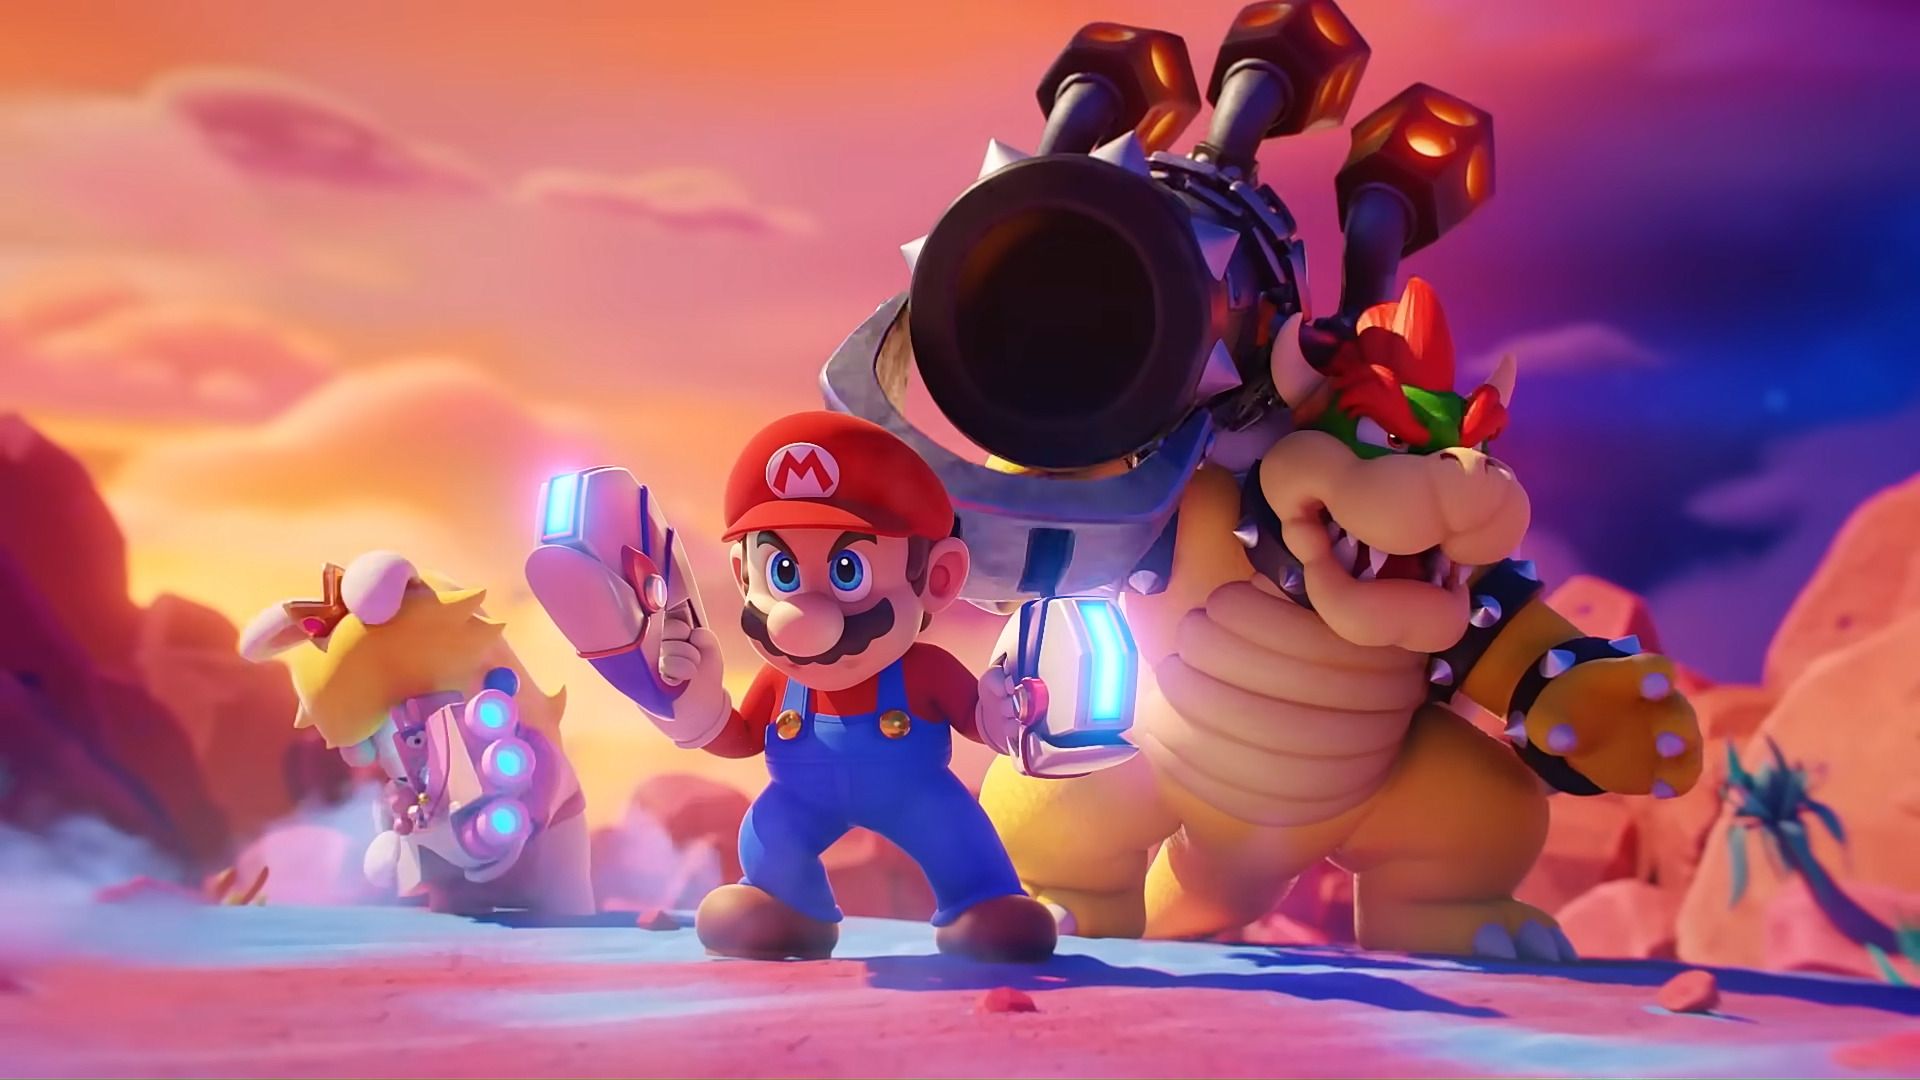 #Erster DLC und spielbare Demo soll Mario + Rabbids Sparks of Hope in die Erfolgsspur bringen